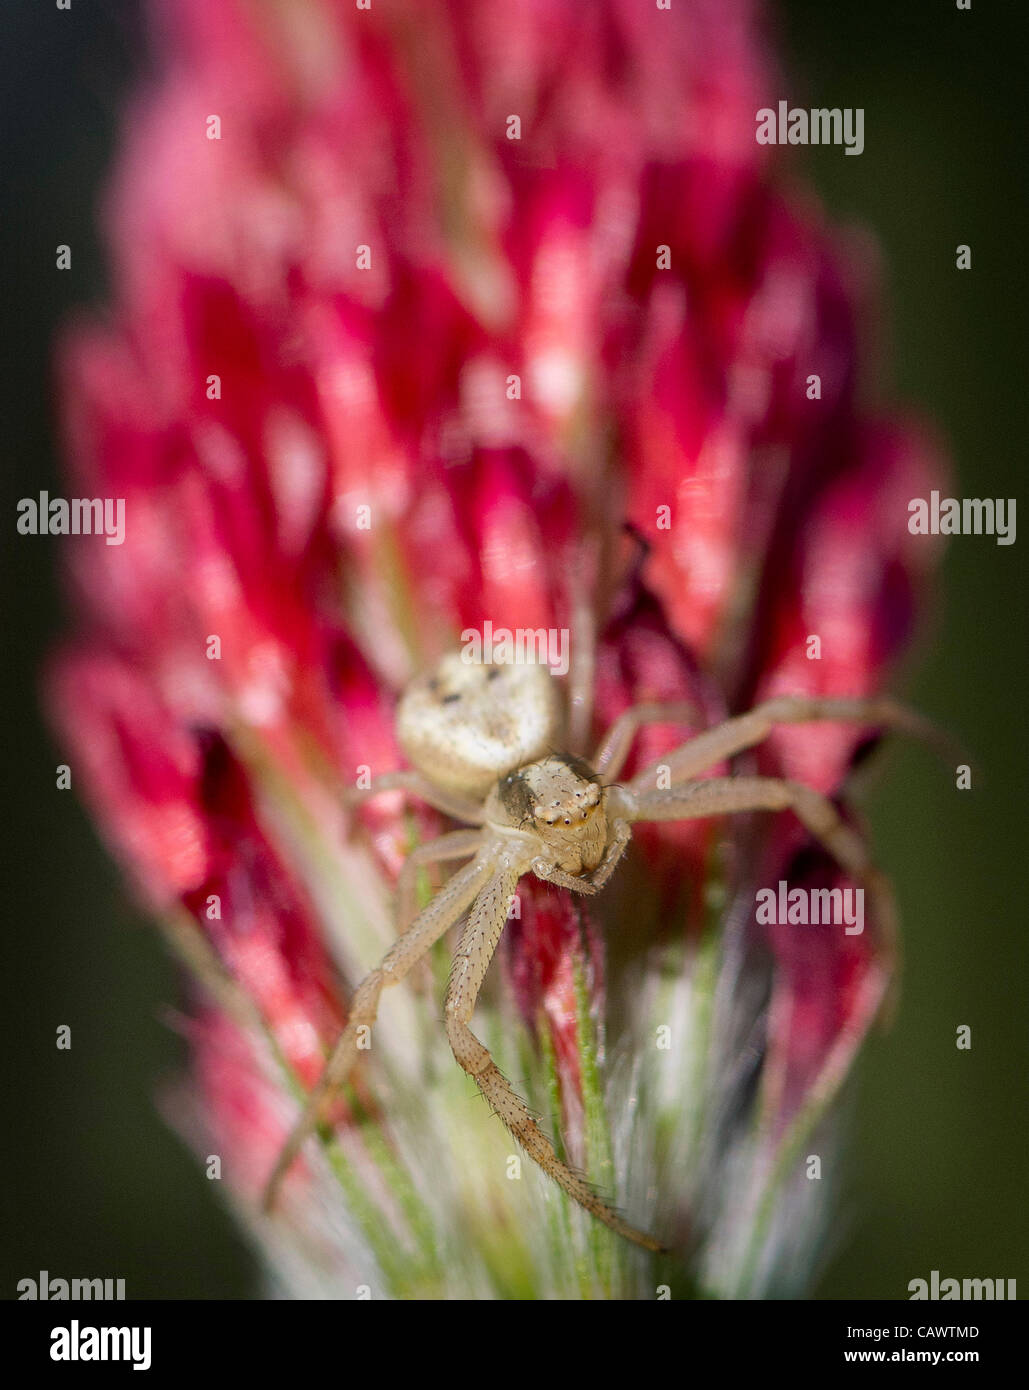 Aprile 28, 2012 - Roseburg, Oregon, Stati Uniti - un ragno predatore si arrampica su un trifoglio di cremisi che cresce in un campo nei pressi di Roseburg. (Credito Immagine: © Robin Loznak/ZUMAPRESS.com) Foto Stock